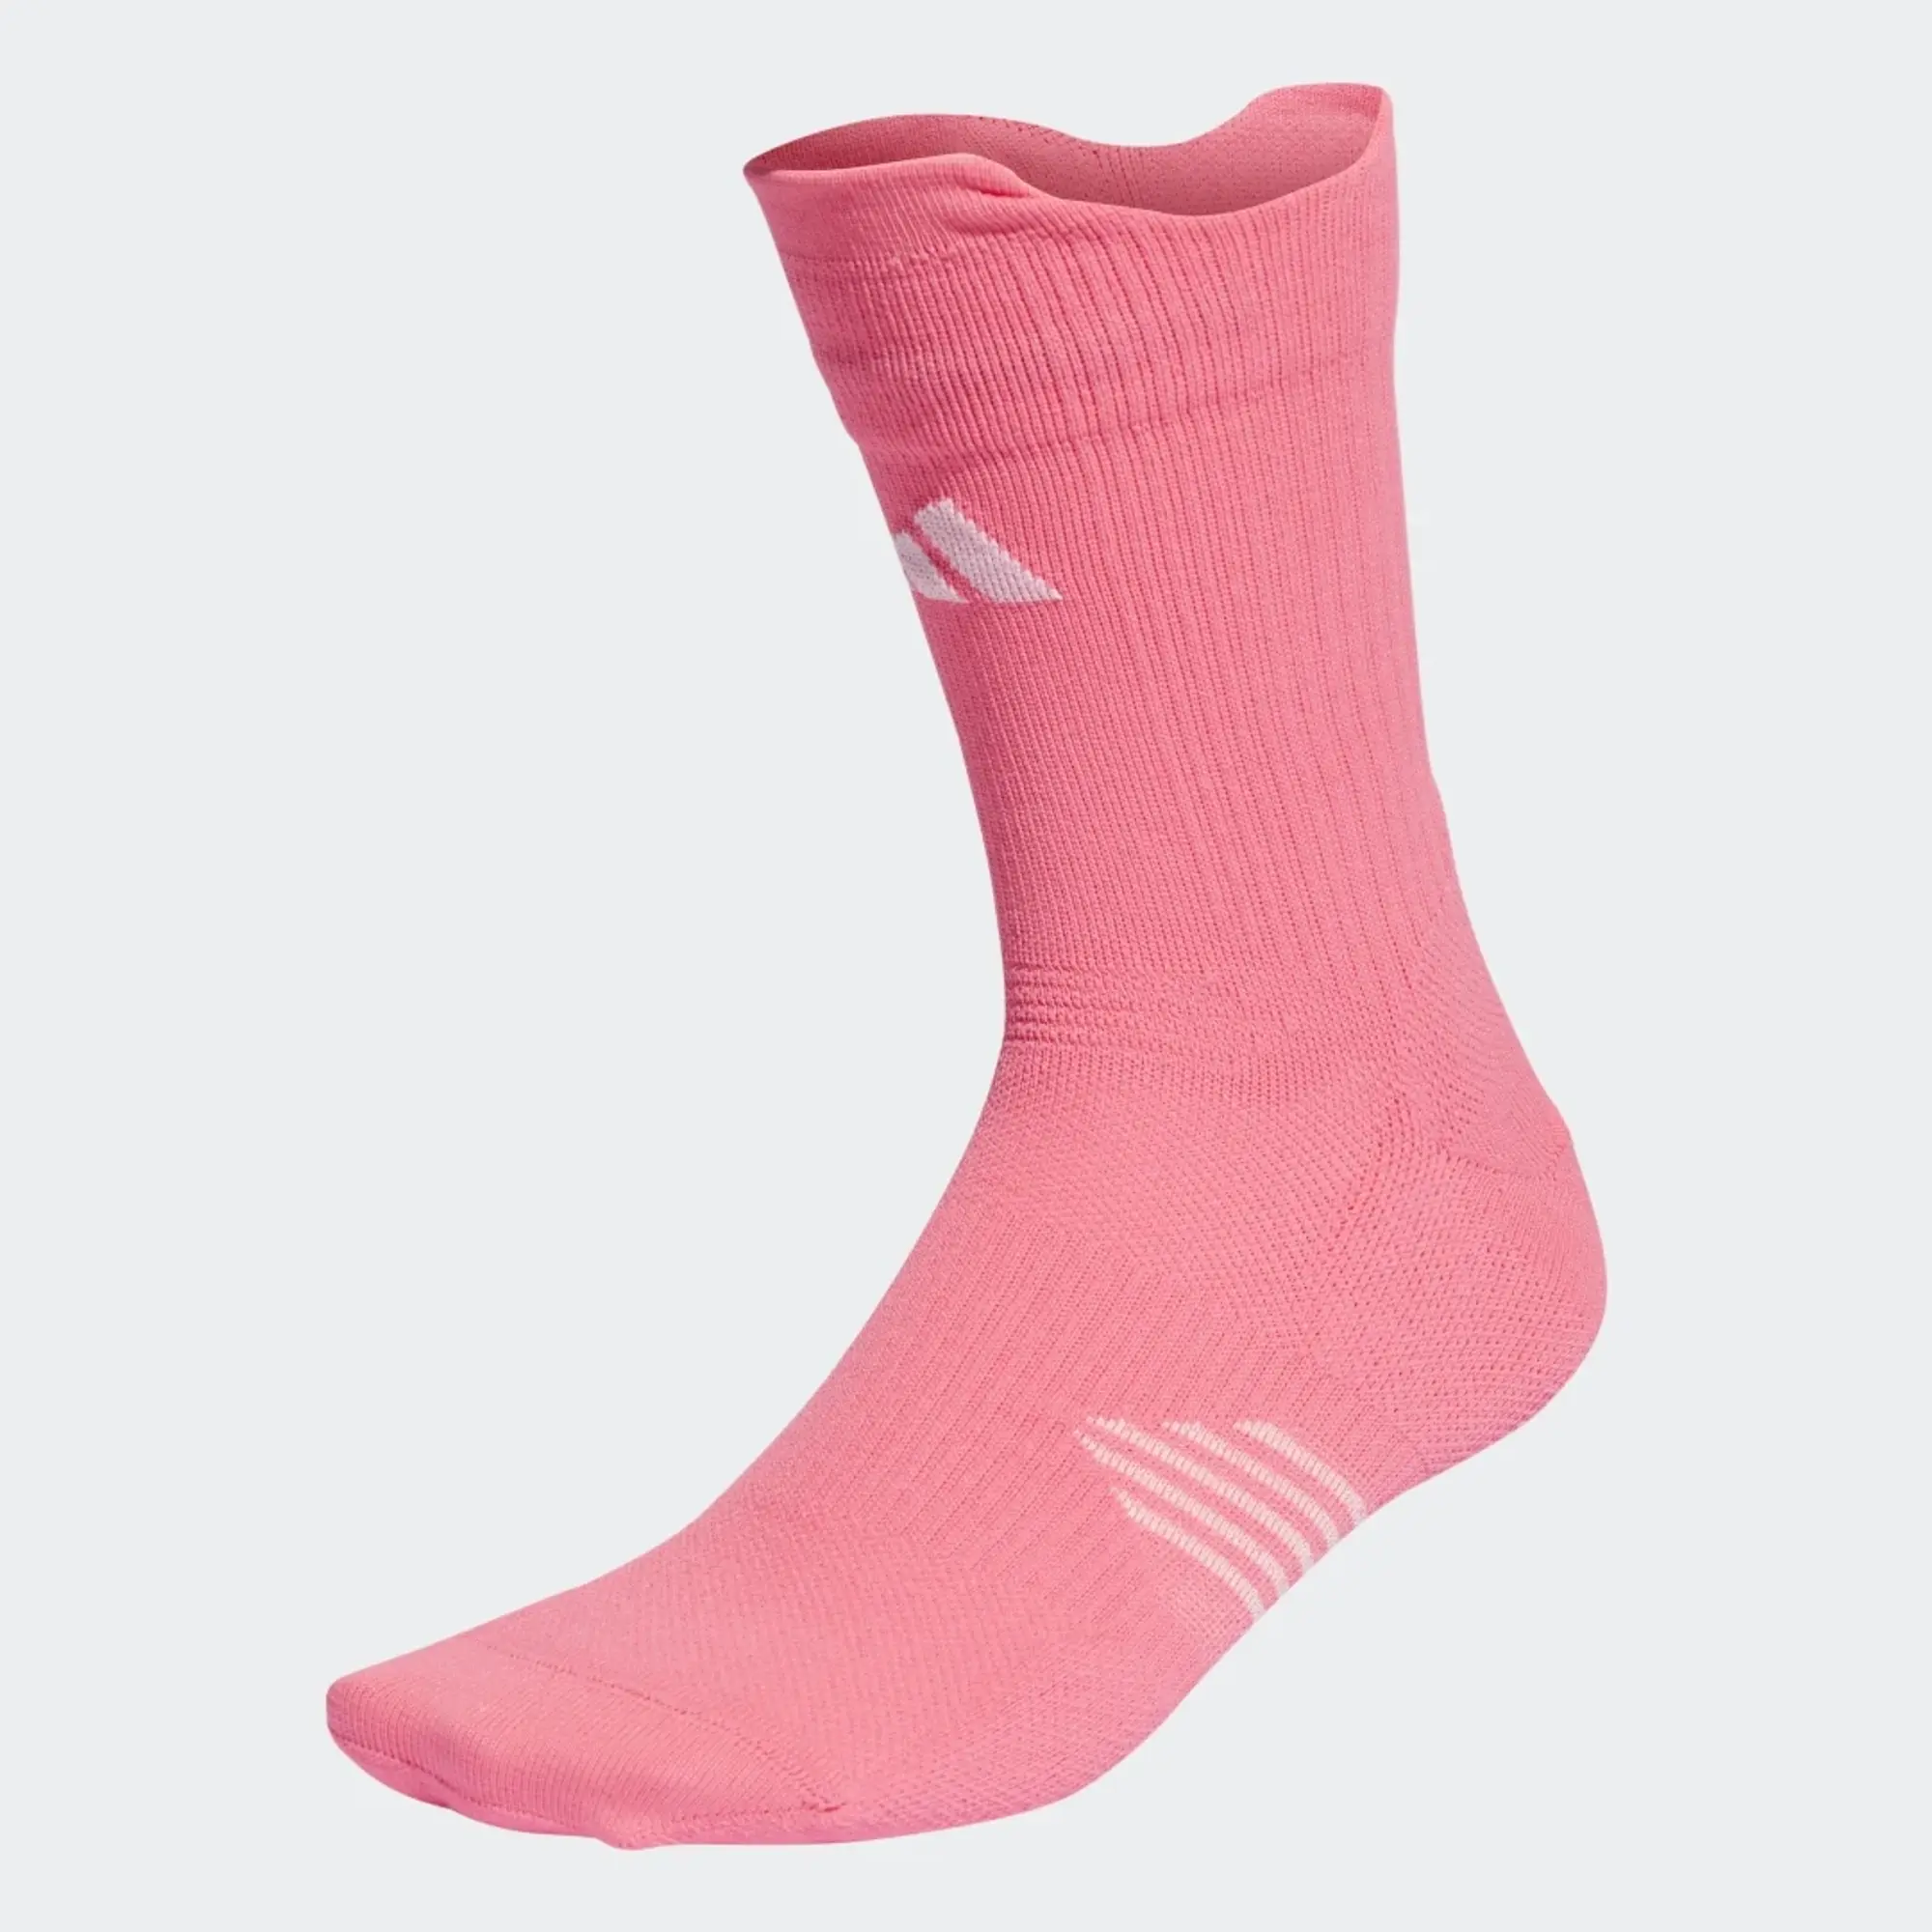 Adidas Supernova Crew Socks  - Pink